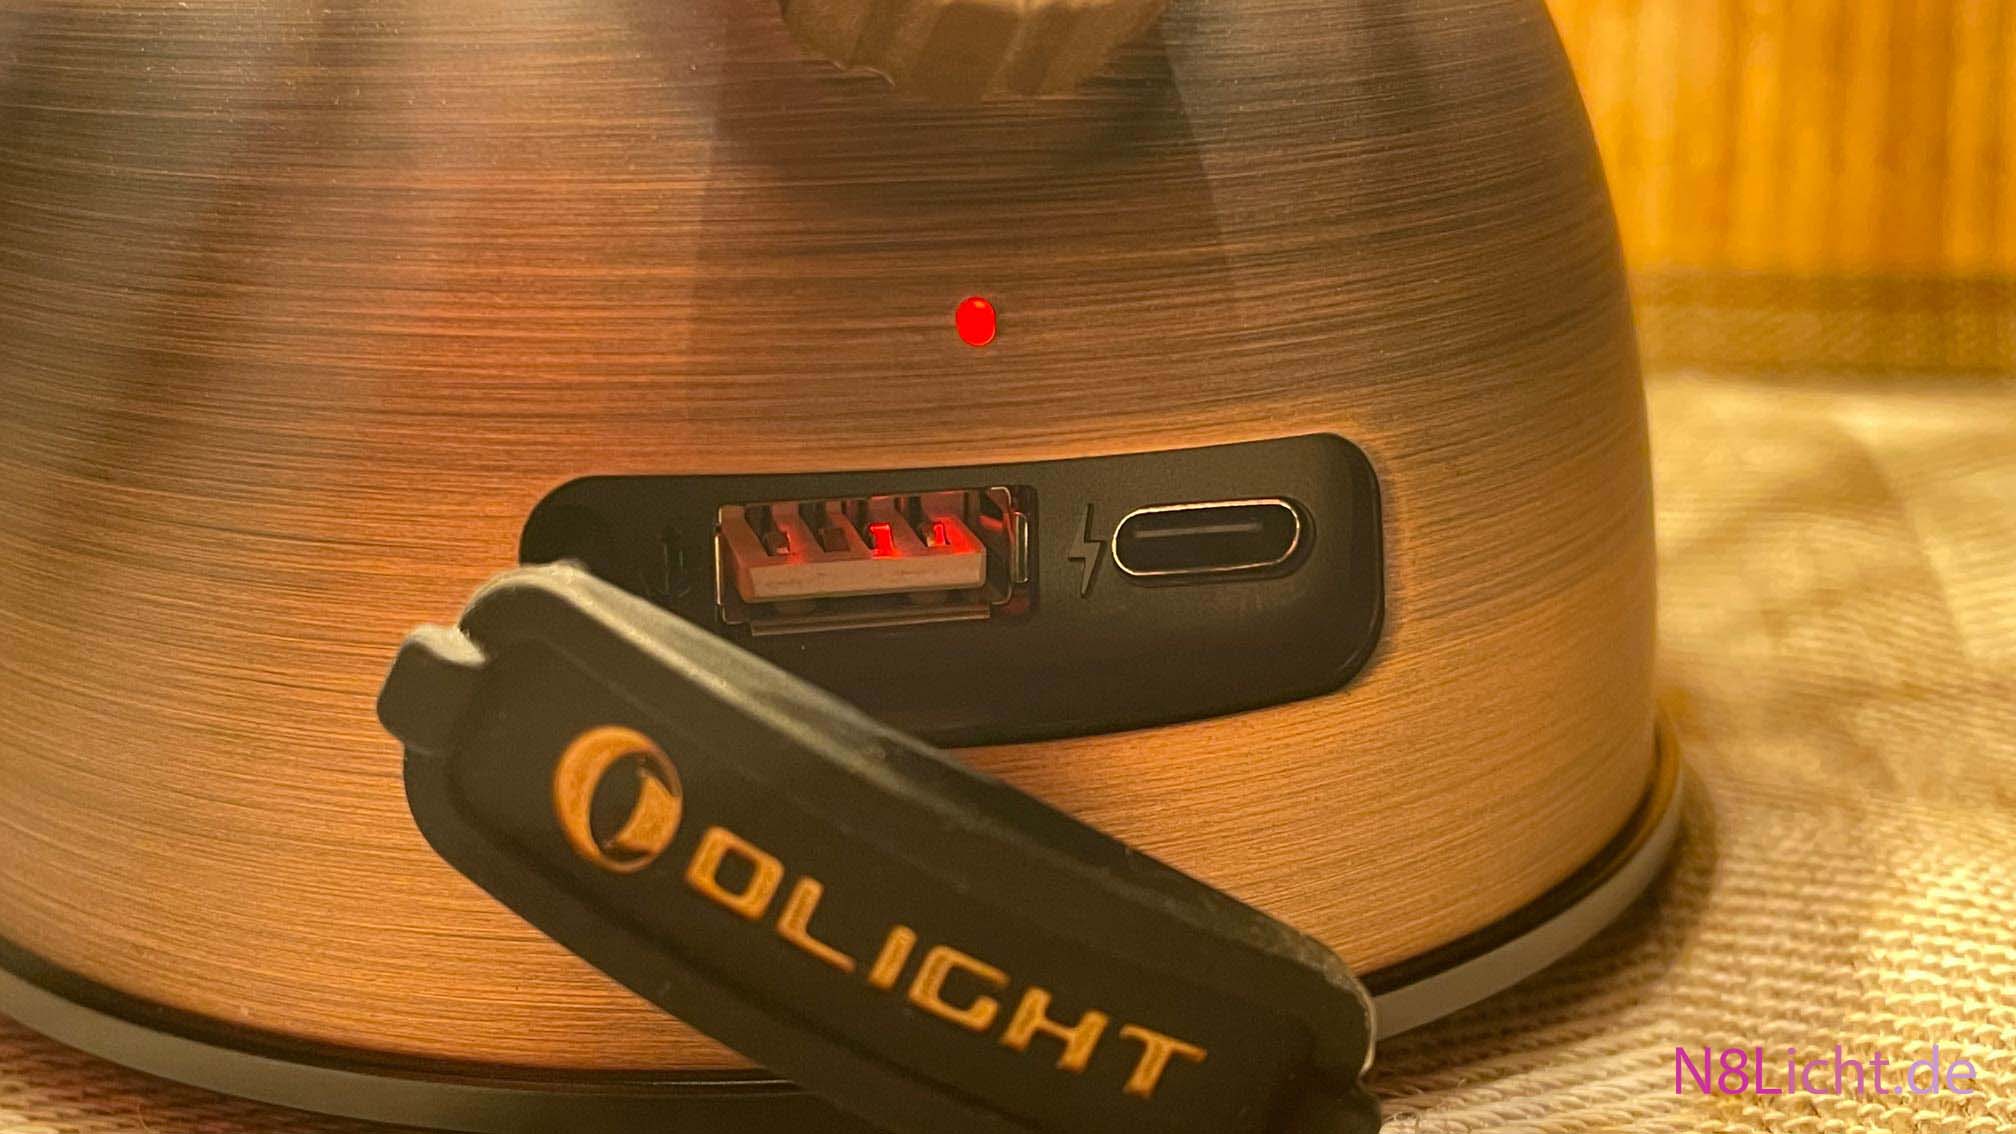 Olantern Classic 2 Pro Ladeanschluss USB-A und USB-C - Batteriekapazität - Laterne von Olight - n8Licht.de